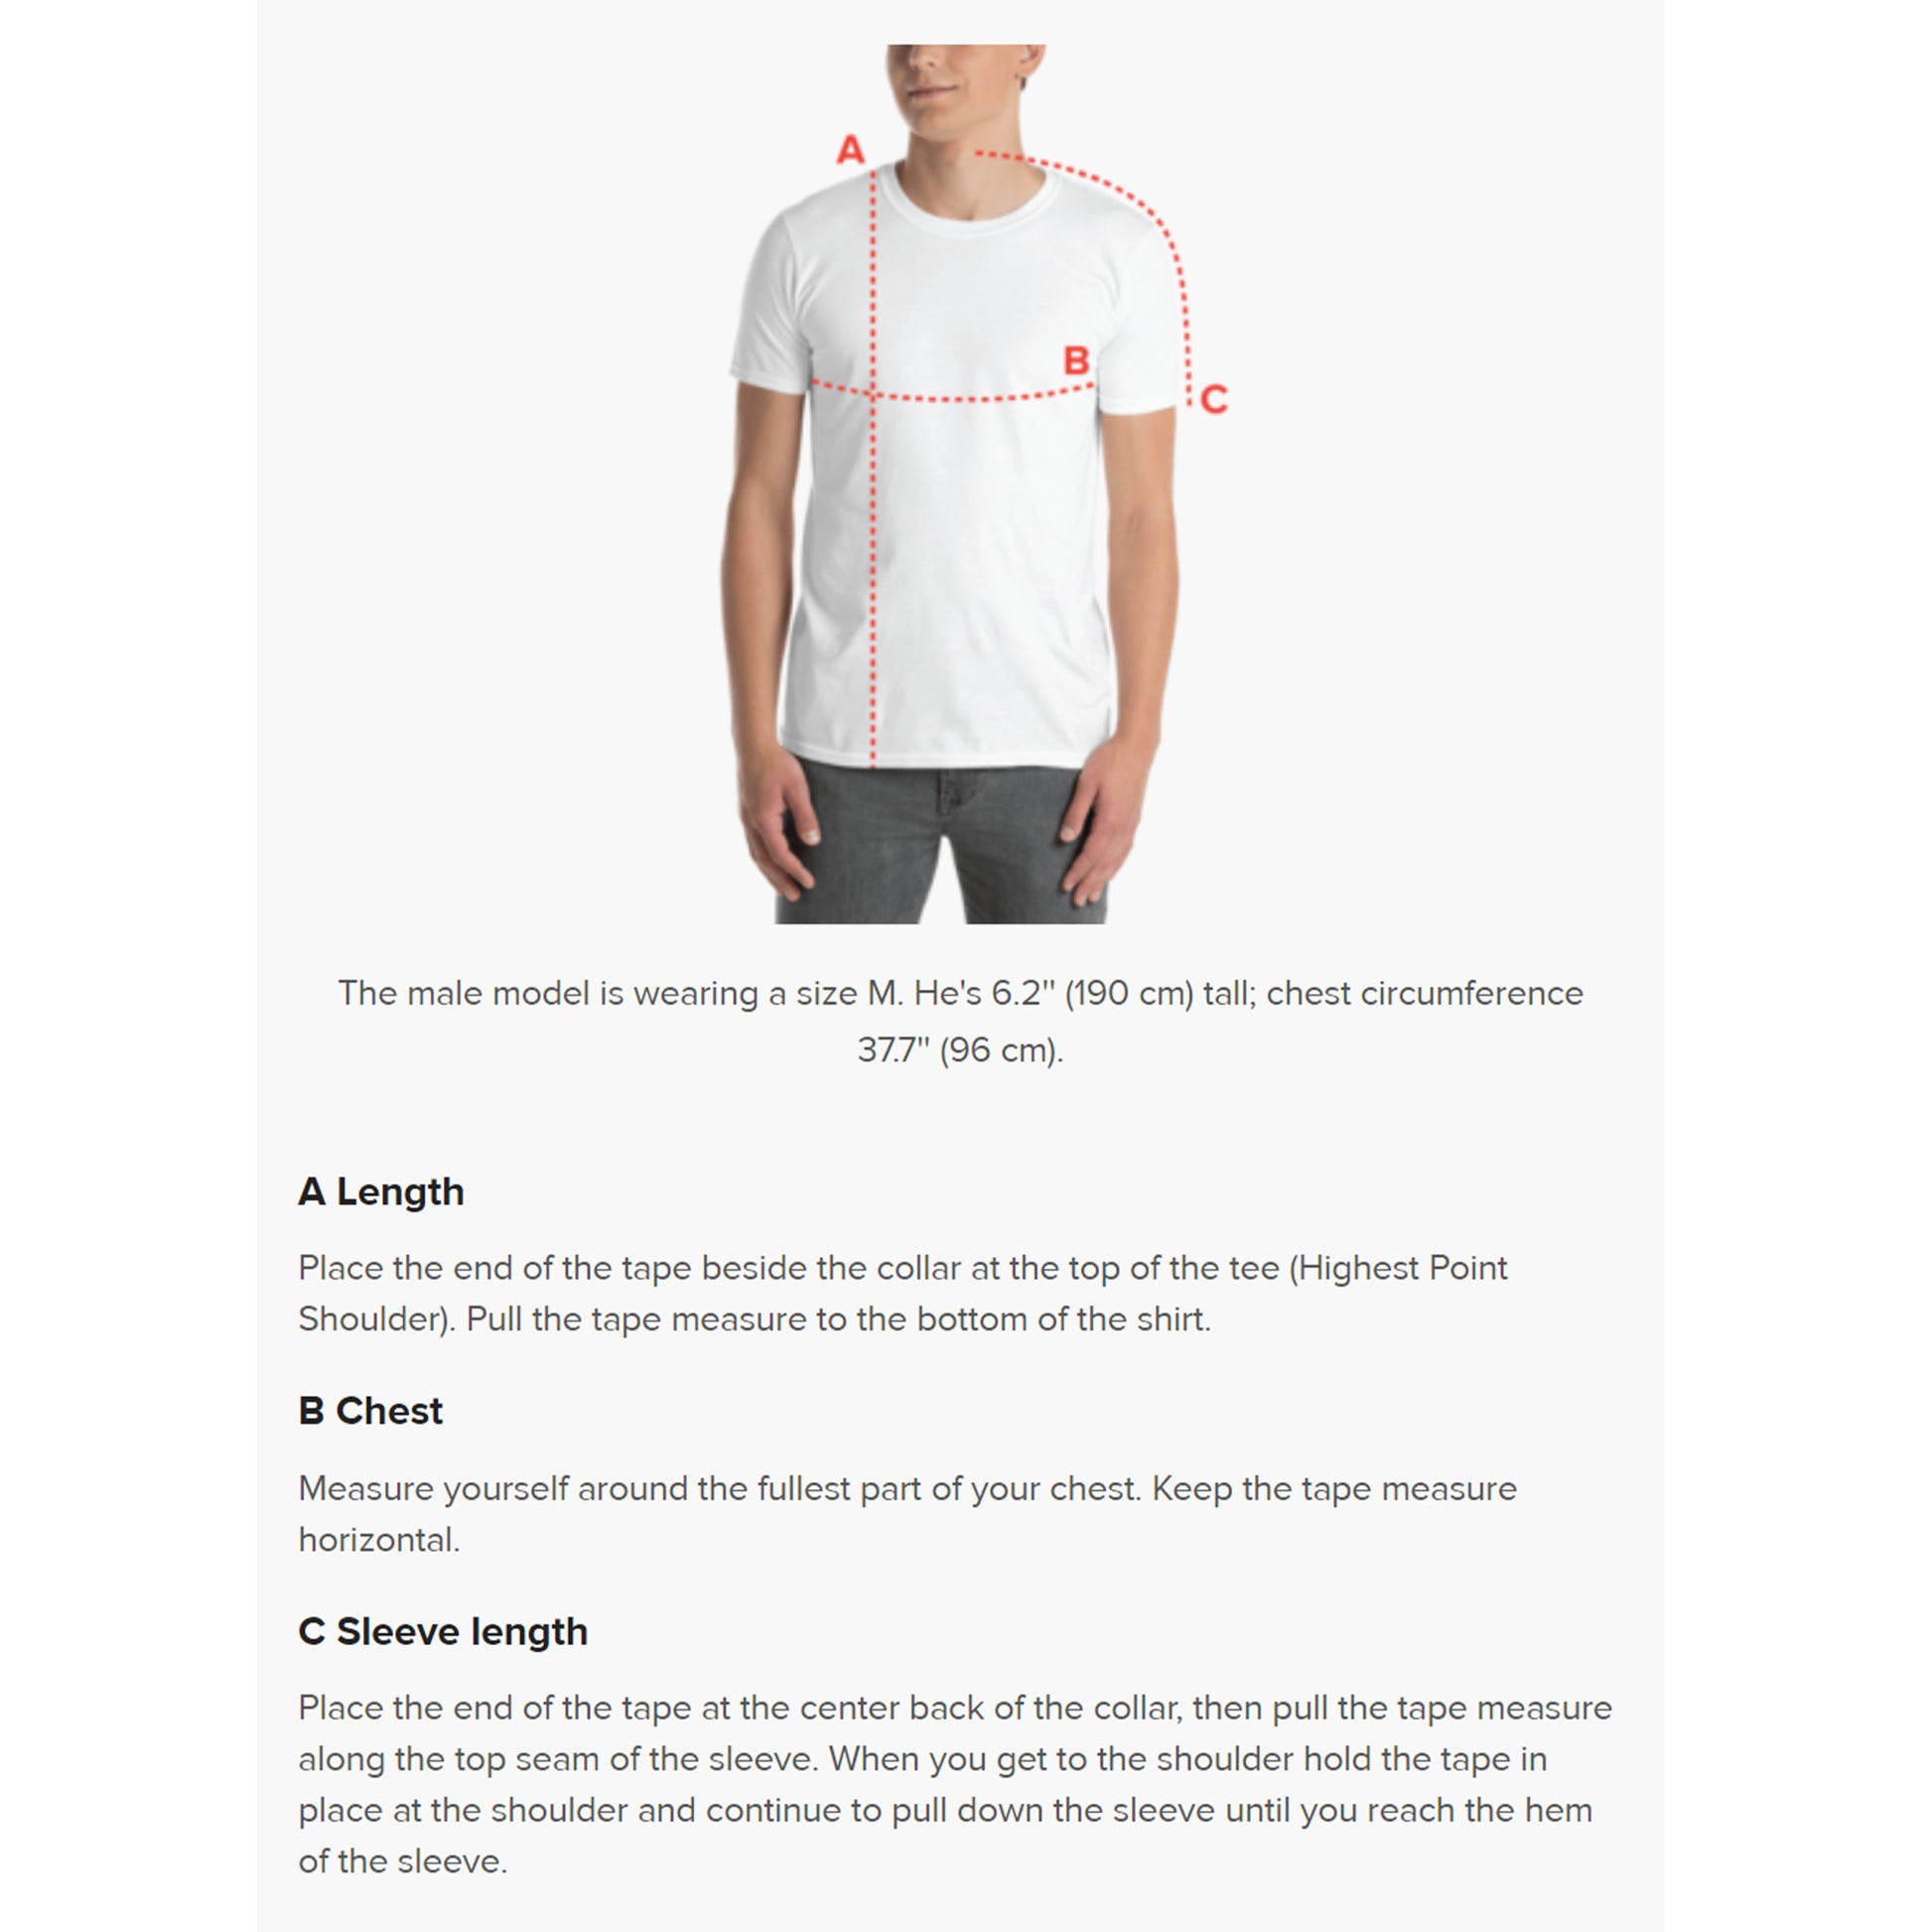 Unisex body measurement guide for unisex SPARS Logomark Basic T-shirt